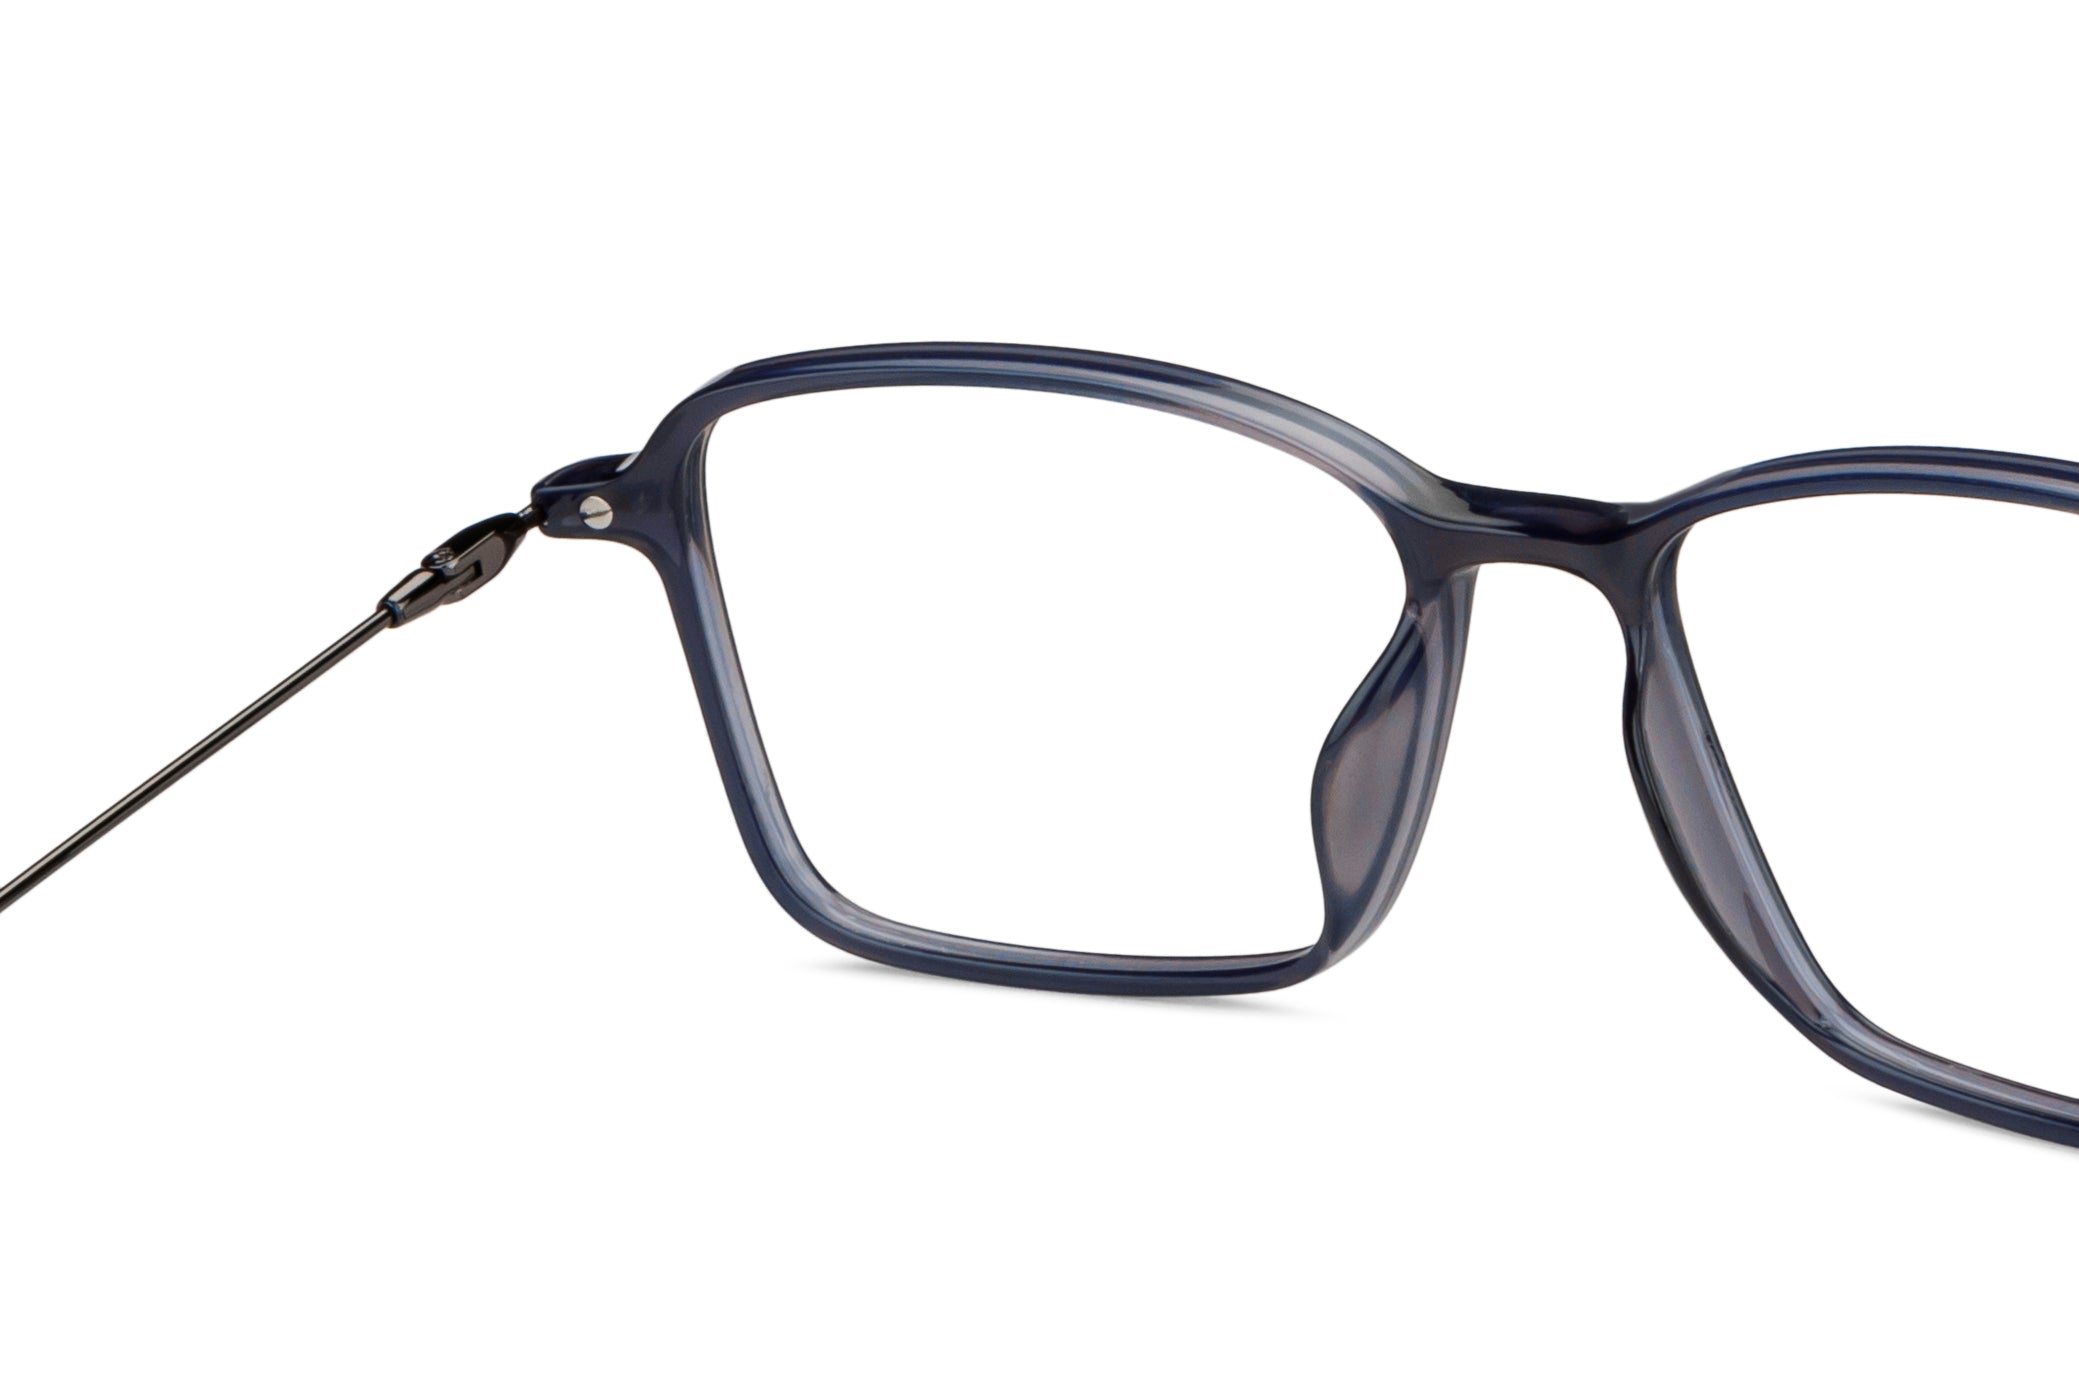 Blue Square Full Rim Unisex Eyeglasses by Lenskart Air-149517